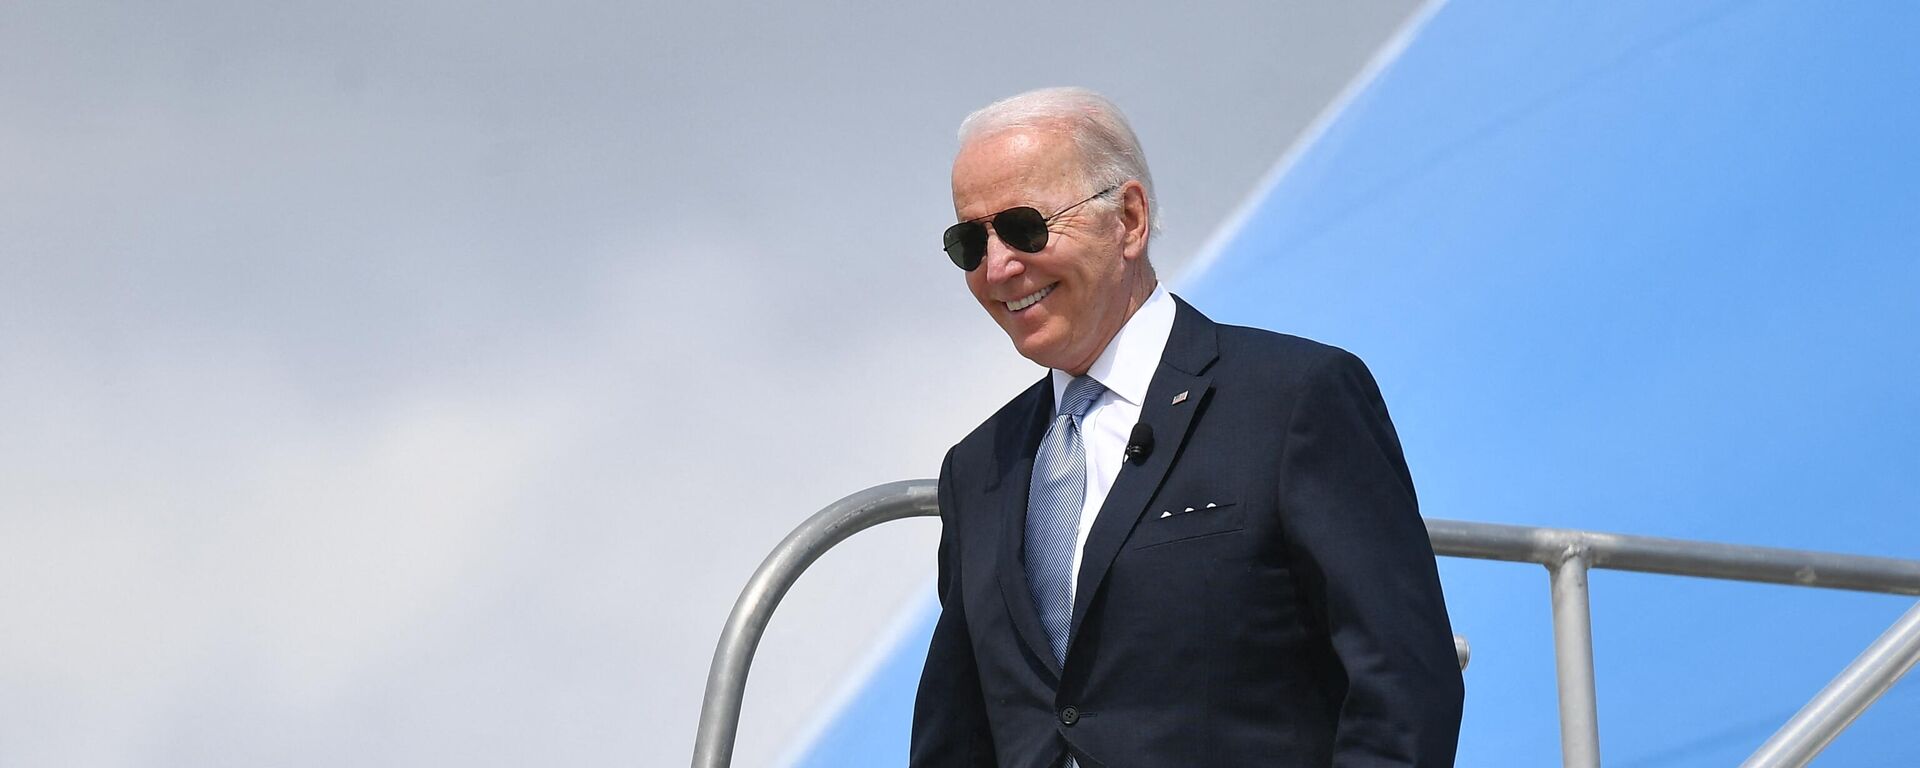 US President Joe Biden steps off Air Force One upon arrival at Portland International Airport in Portland, Oregon on April 21, 2022. (Photo by MANDEL NGAN / AFP) - Sputnik International, 1920, 22.05.2022